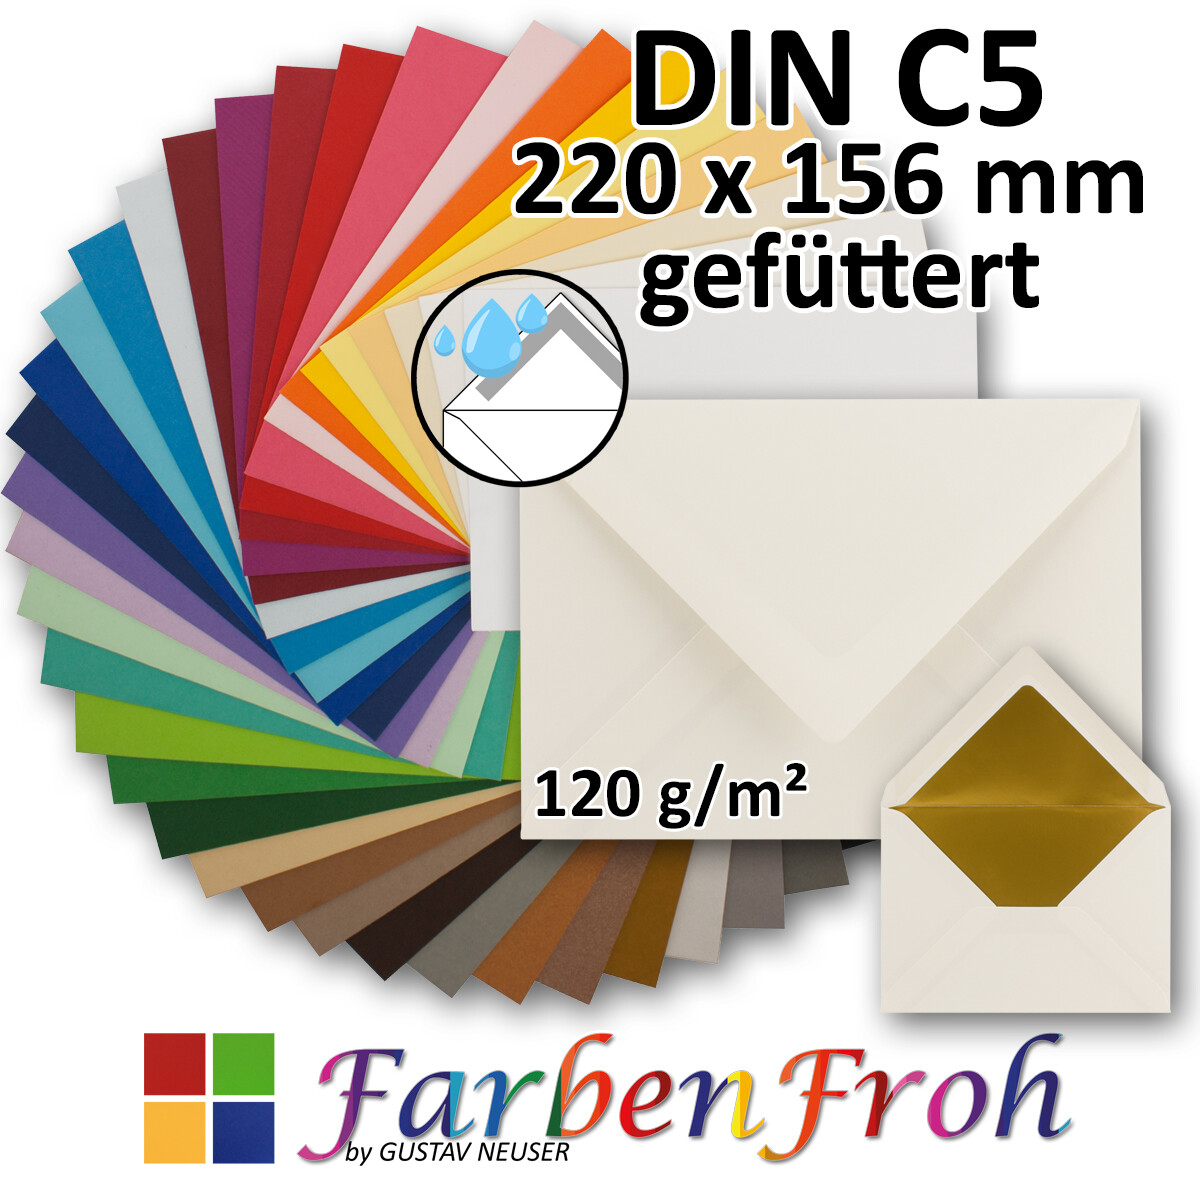 Für A6 & A4 Papier 50x Briefumschläge Schwarz DIN C6 Format 11,4 x 16,2 cm Weihnachten Haftklebung Grußkarten & Einladungen Kuverts ohne Fenster